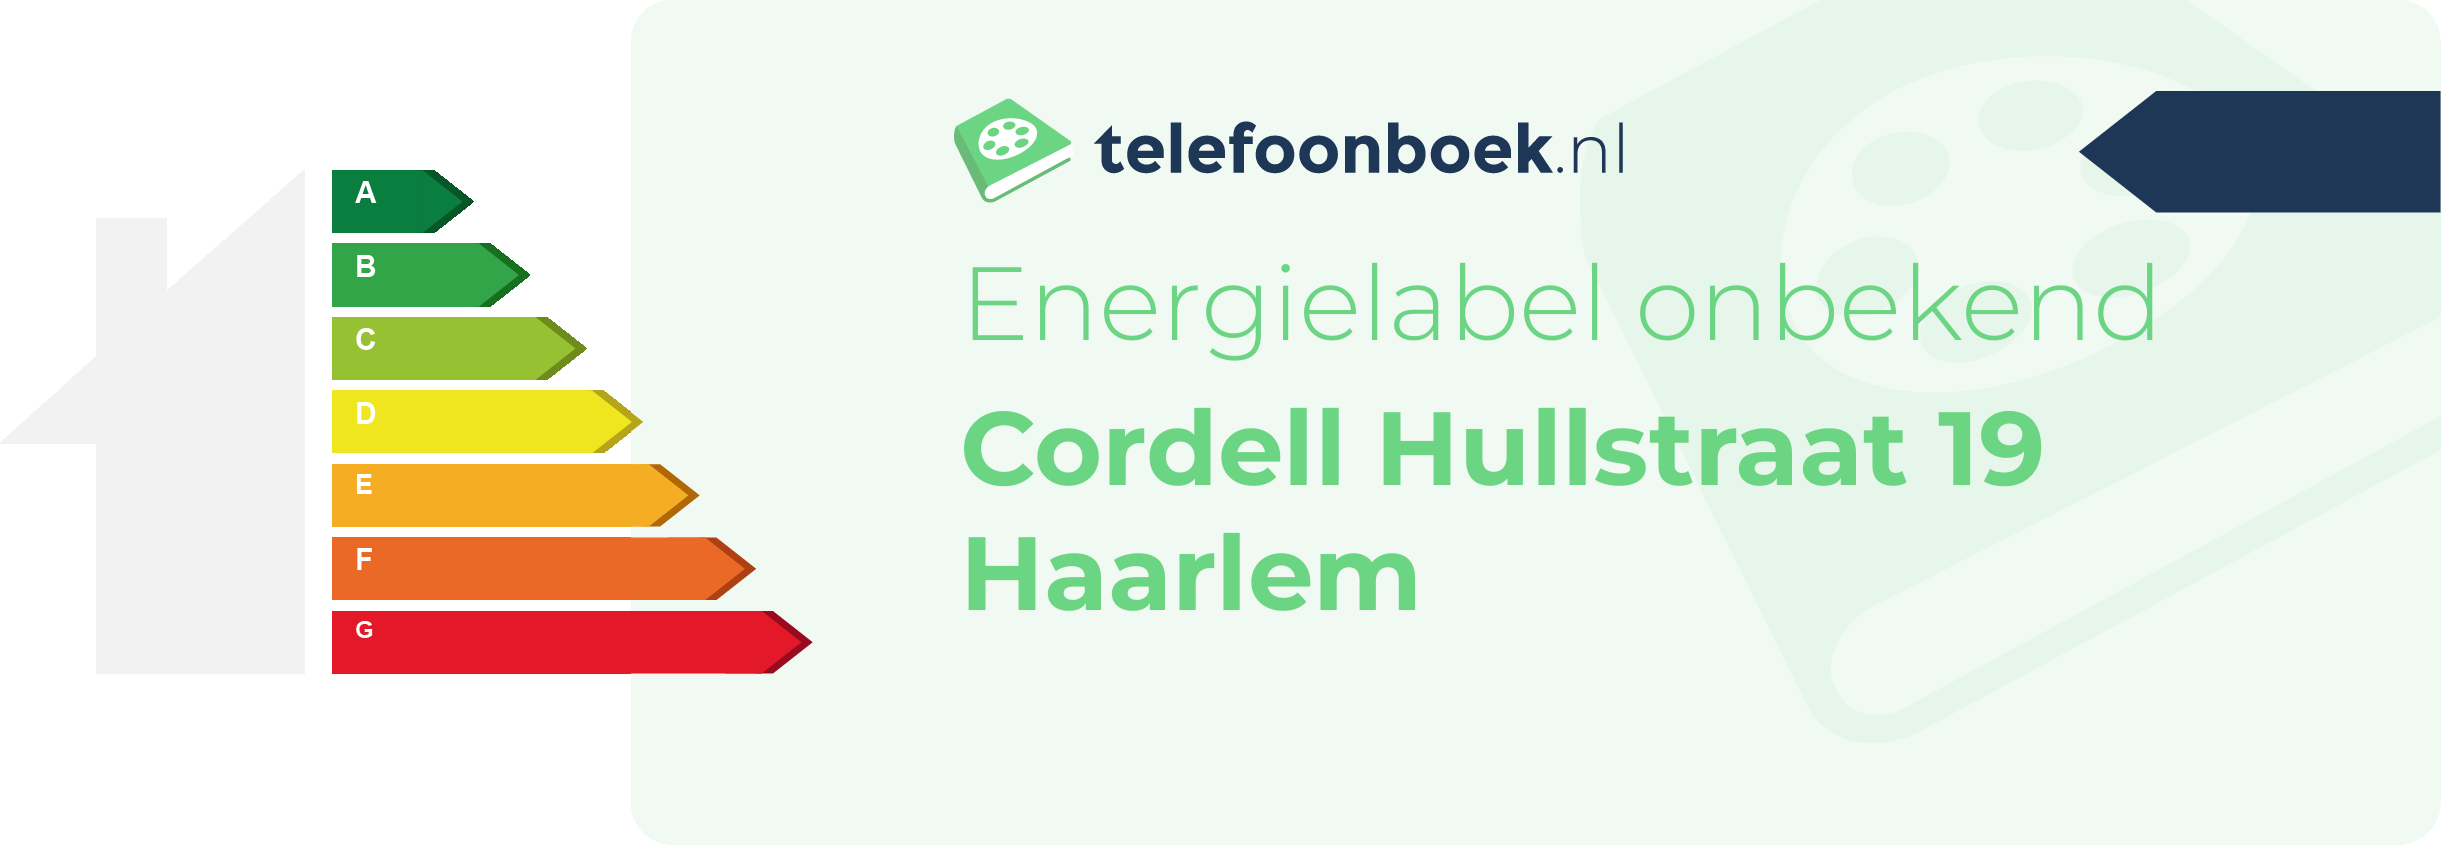 Energielabel Cordell Hullstraat 19 Haarlem